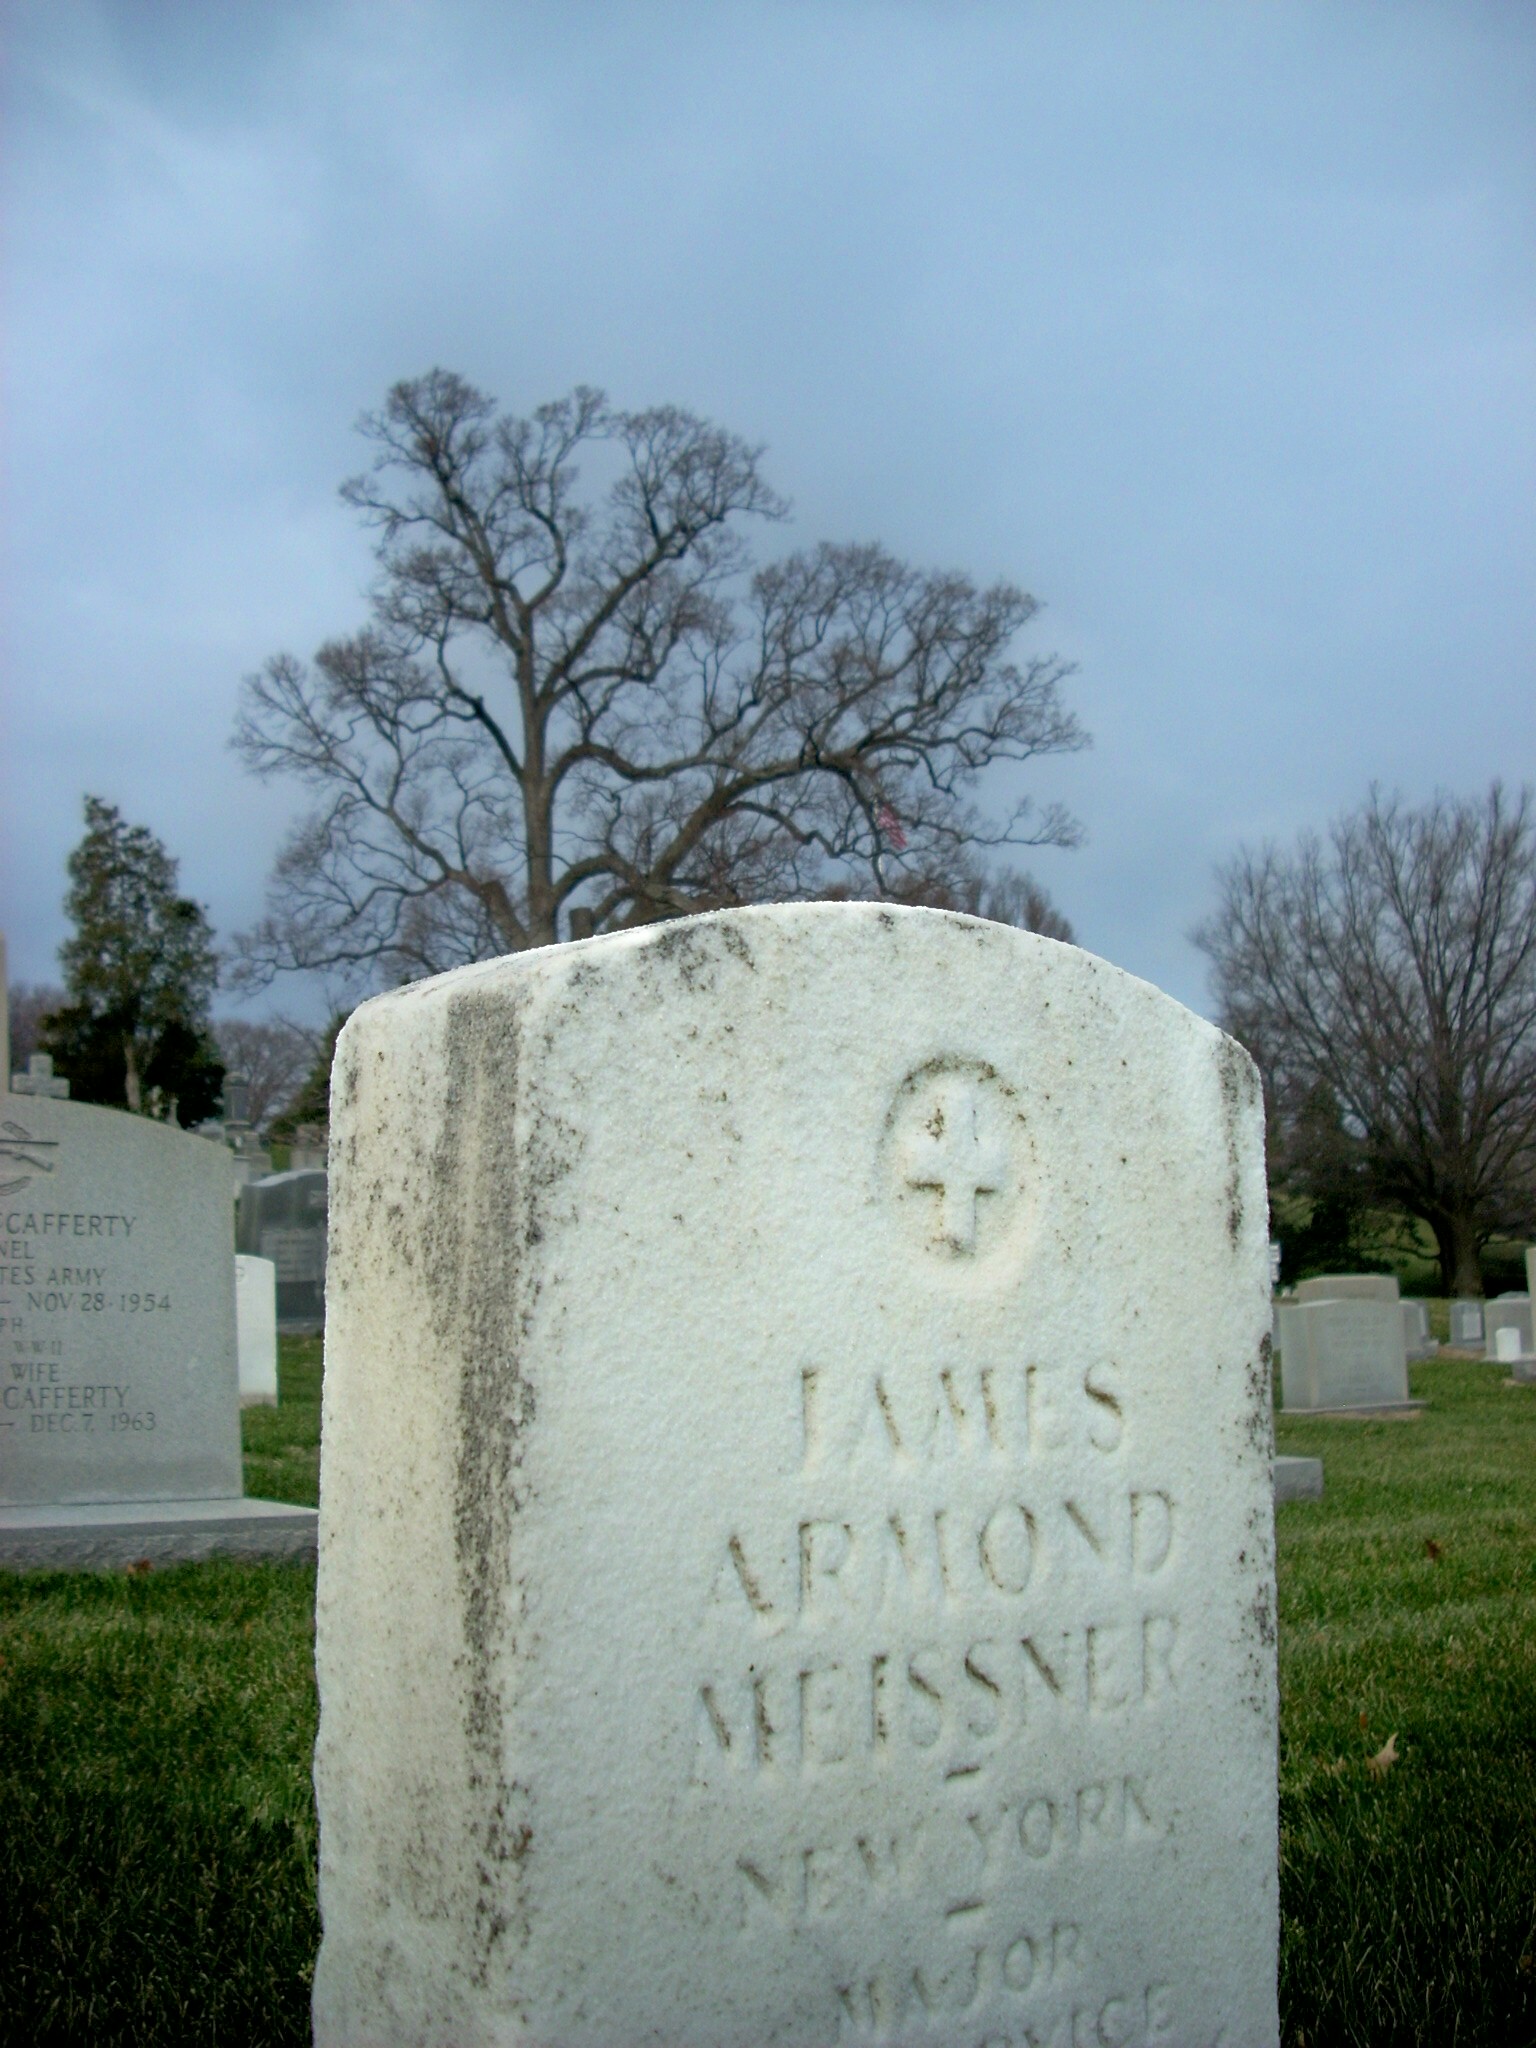 jameissner-gravesite-photo-january-2009-005